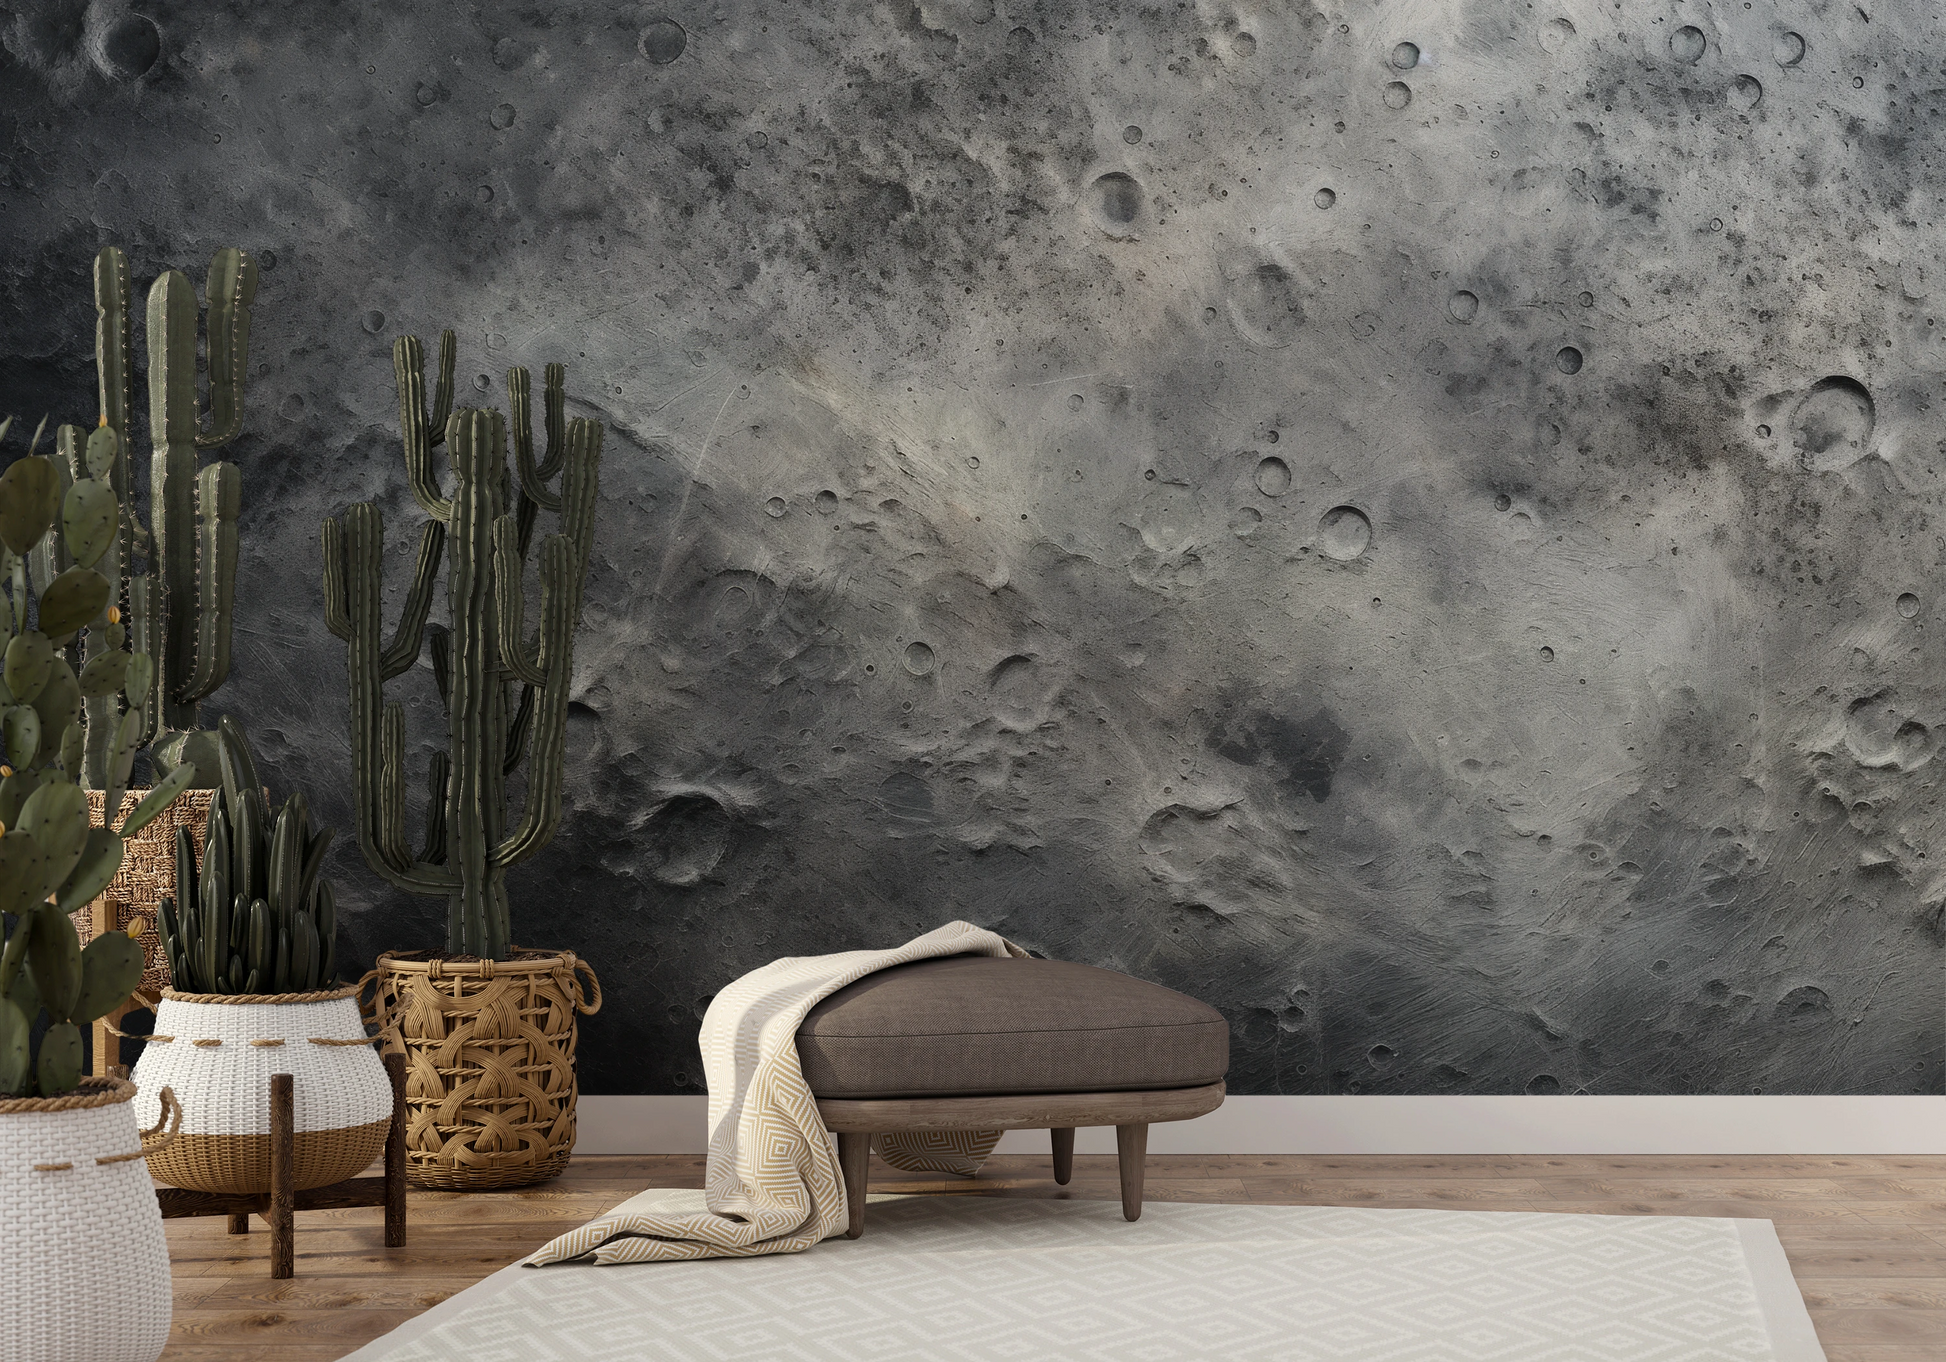 Wzór fototapety artystycznej o nazwie Lunar Craters pokazanej w aranżacji wnętrza.